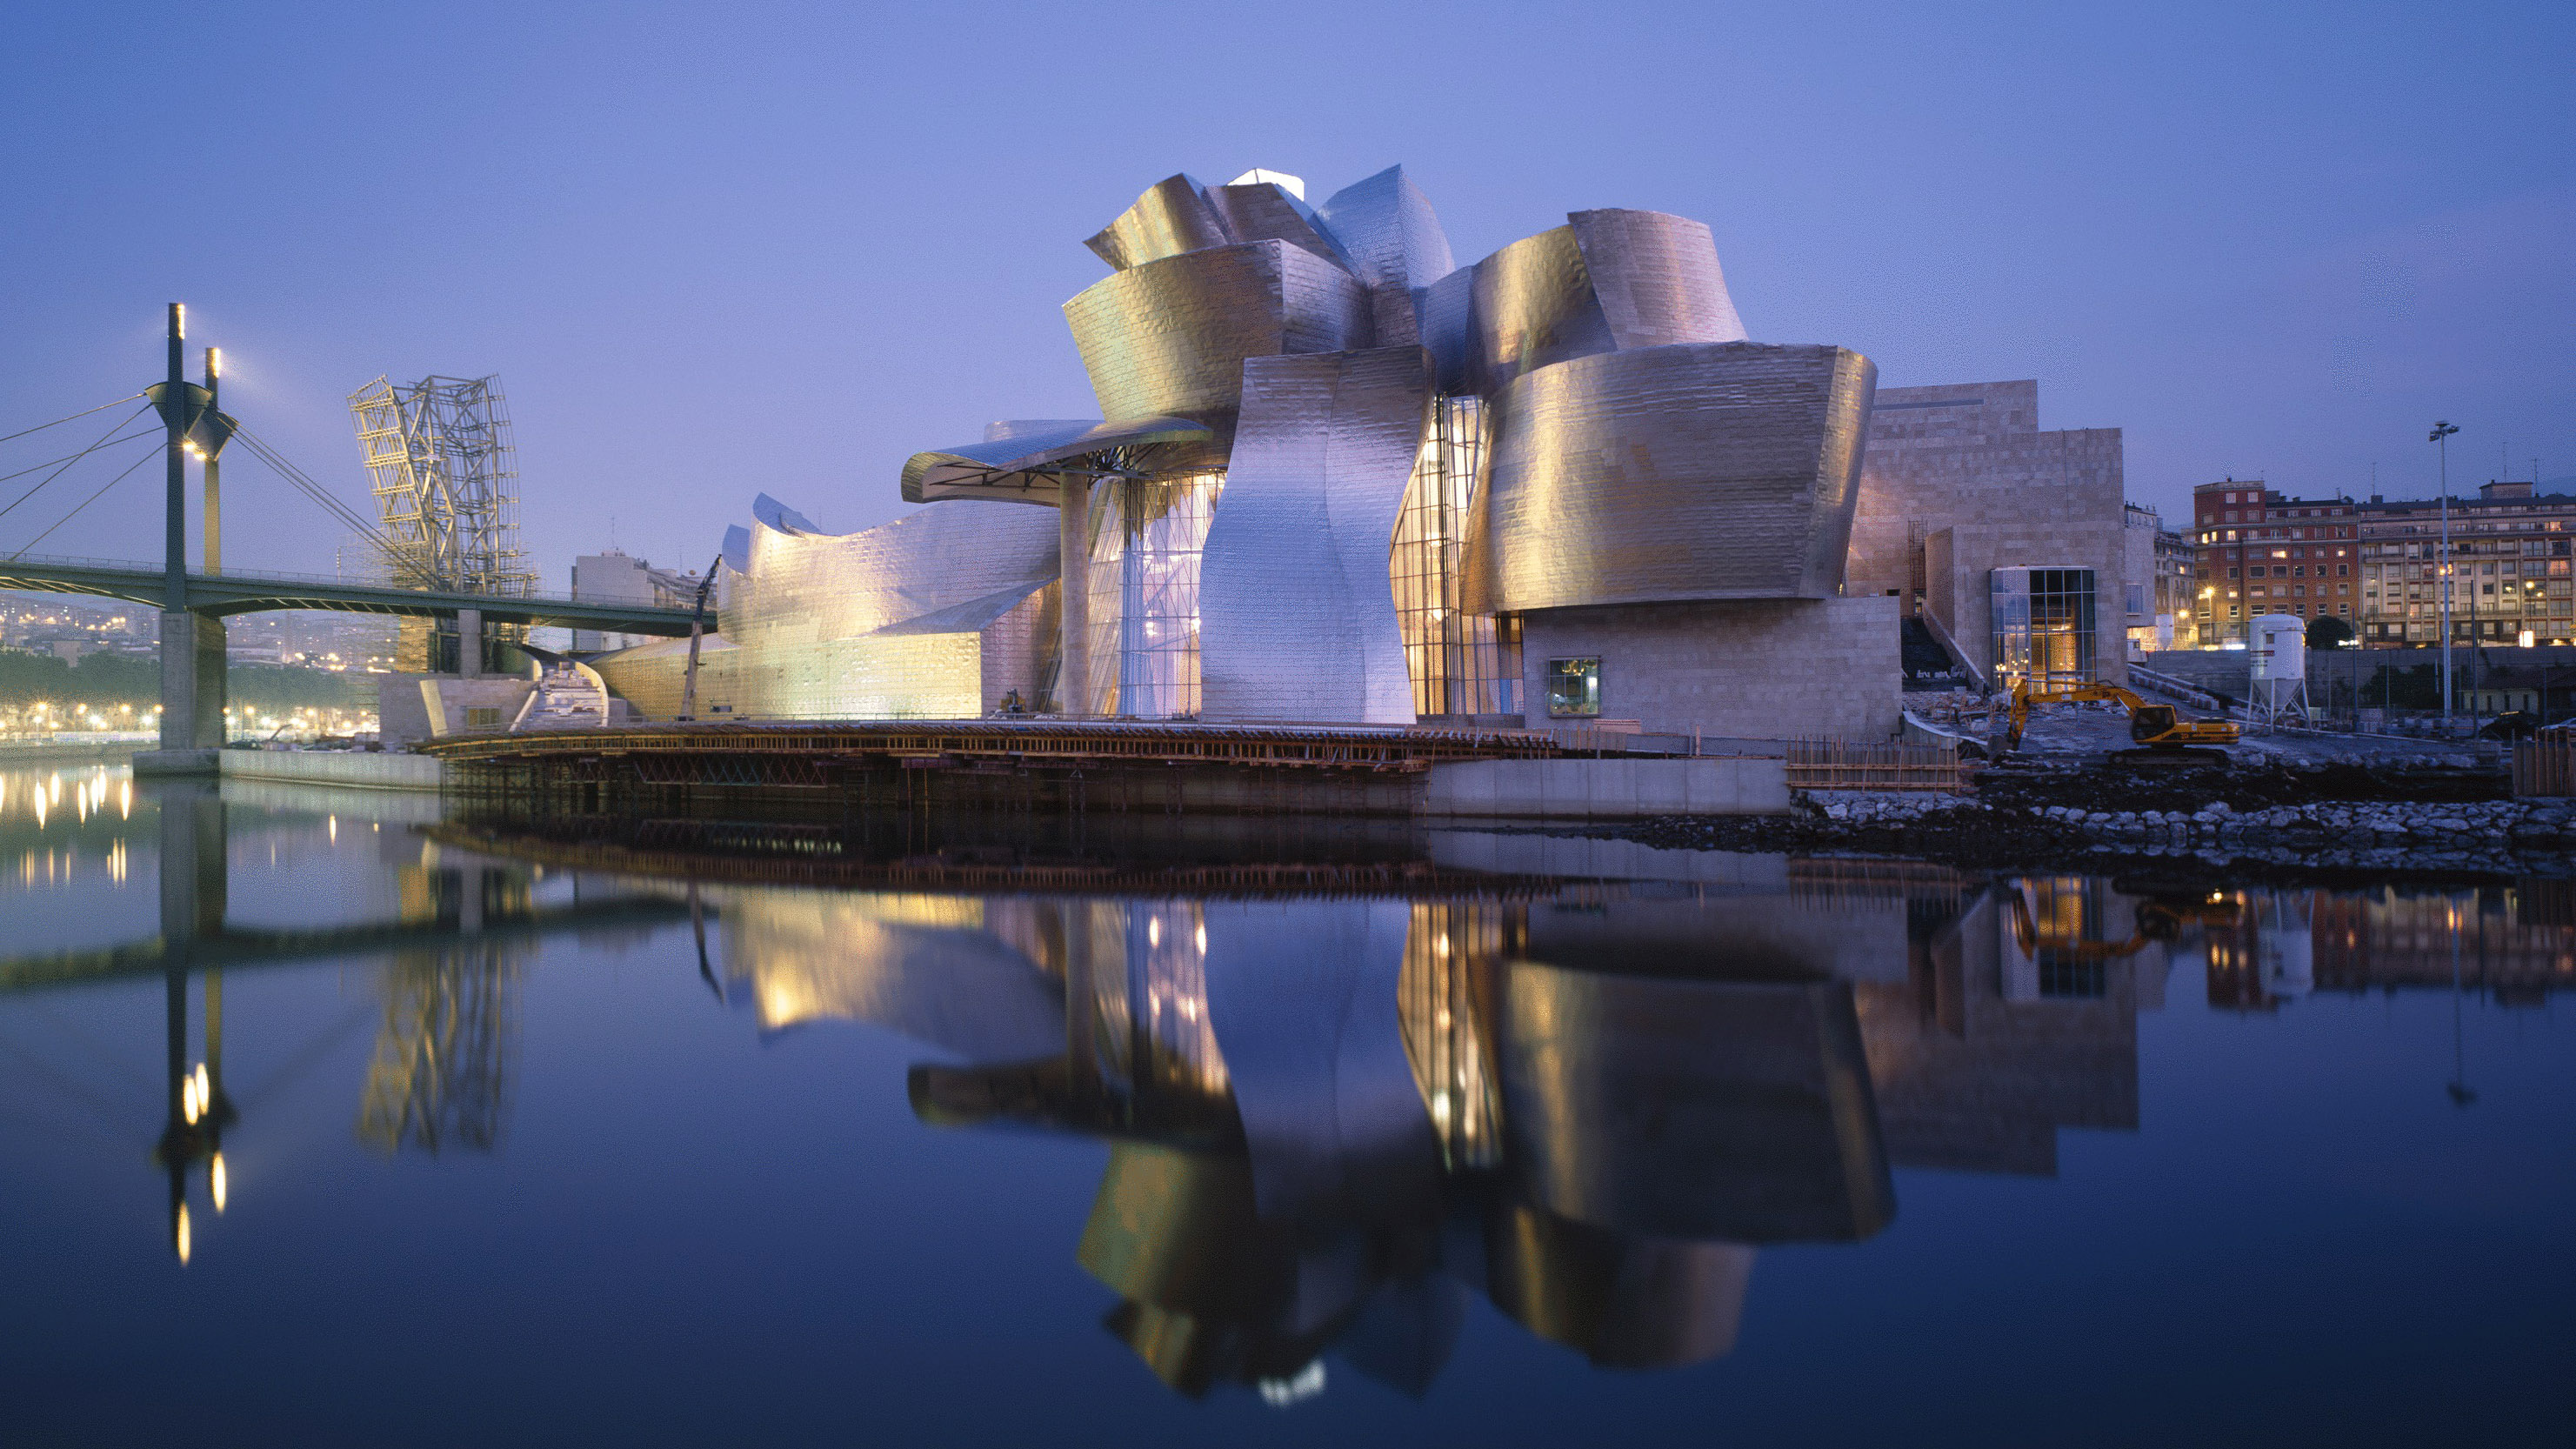 Guggenheim Museum Bilbao Celebrates 20th Anniversary The, 52% OFF